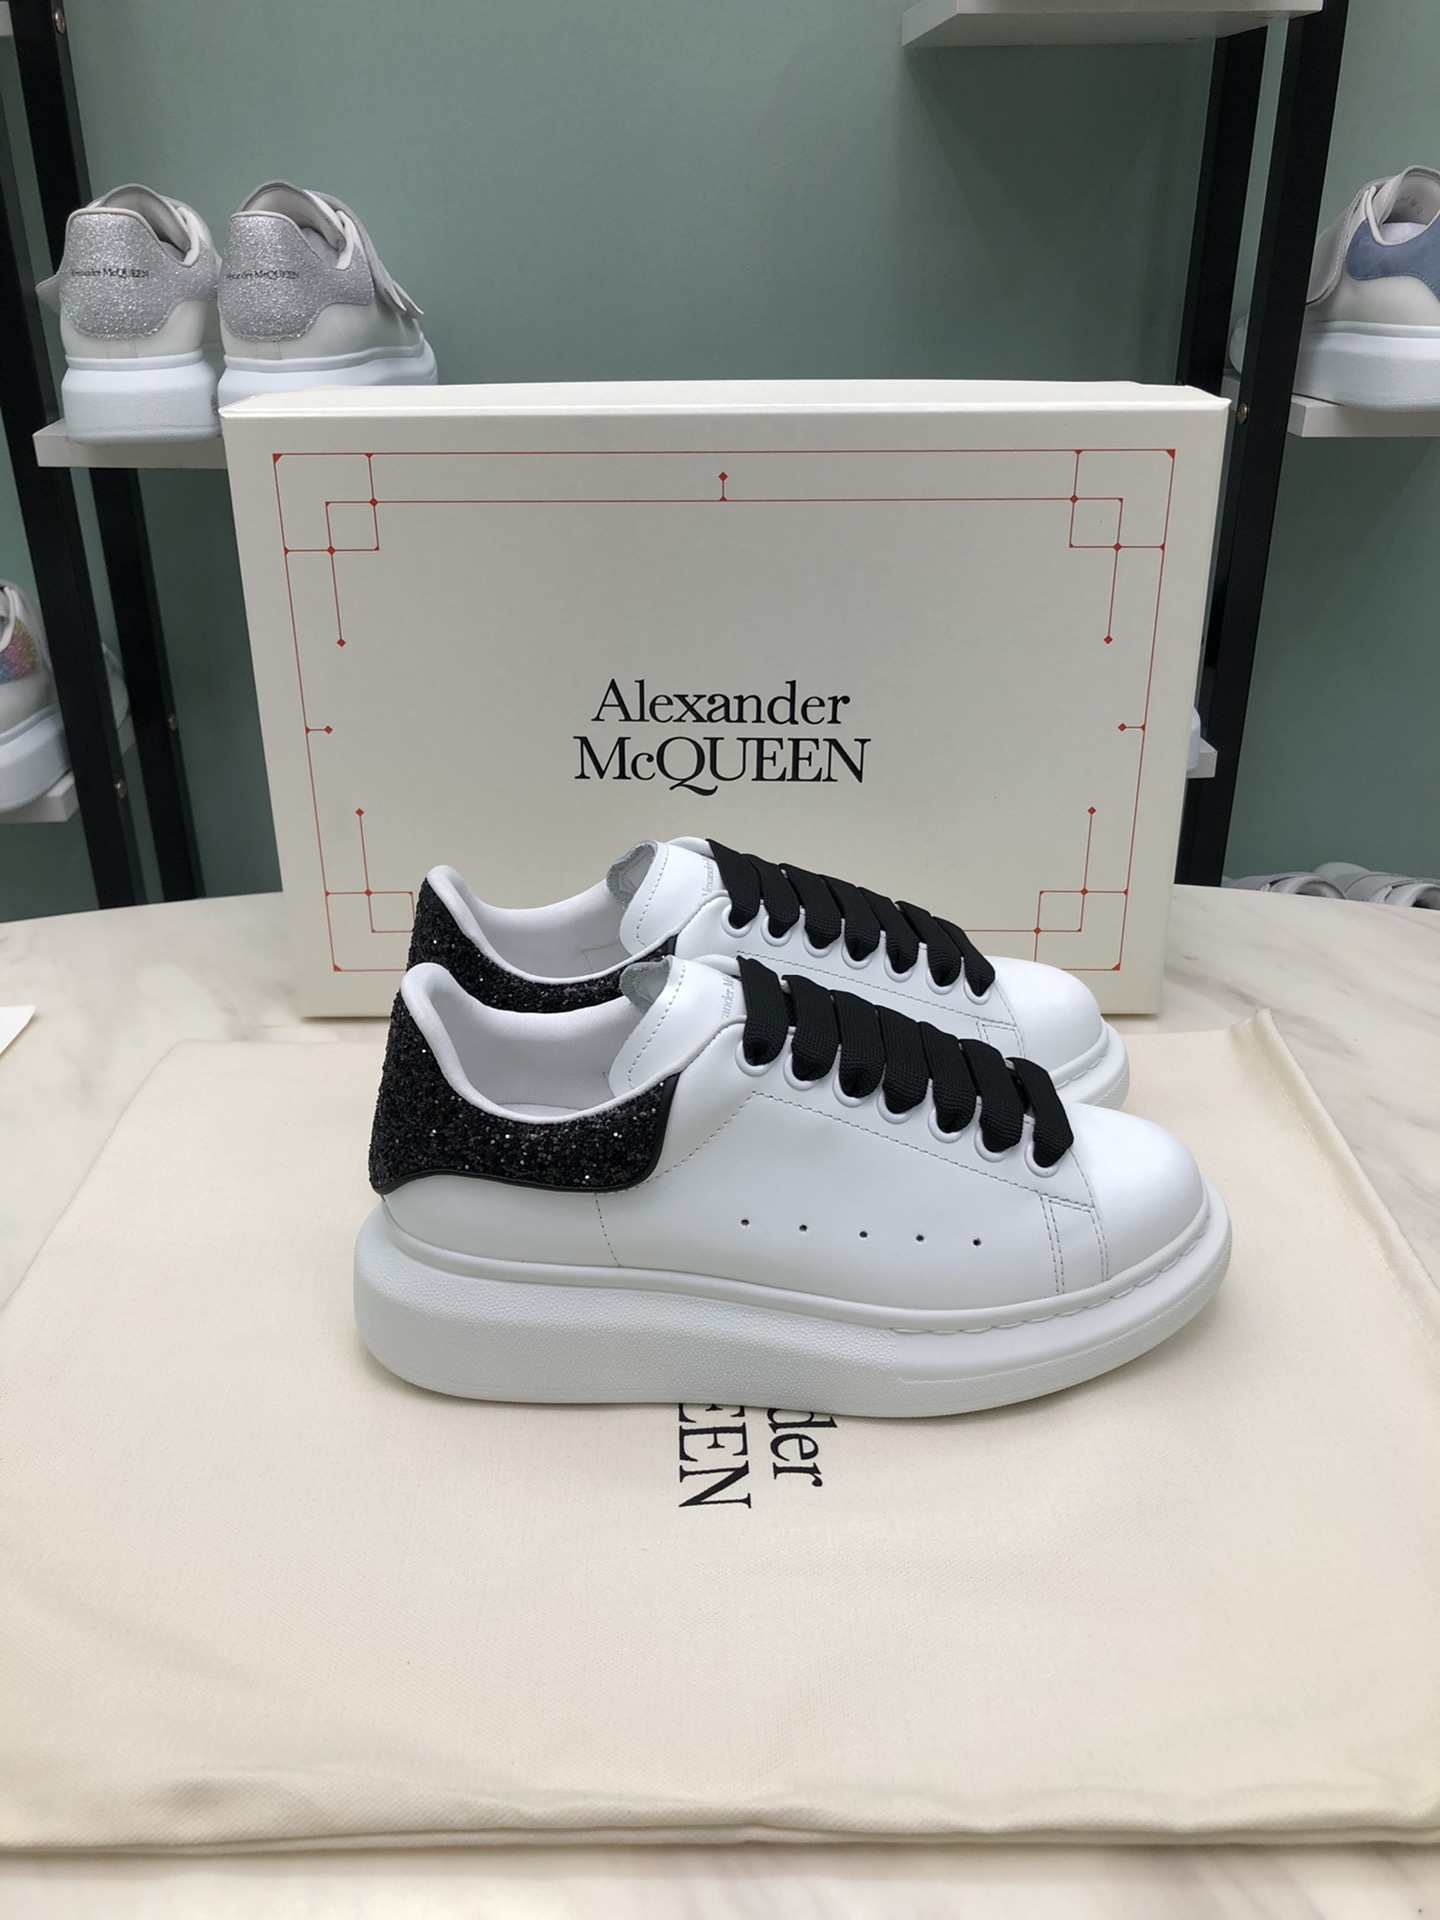 Alexander McQueen Shoes 020